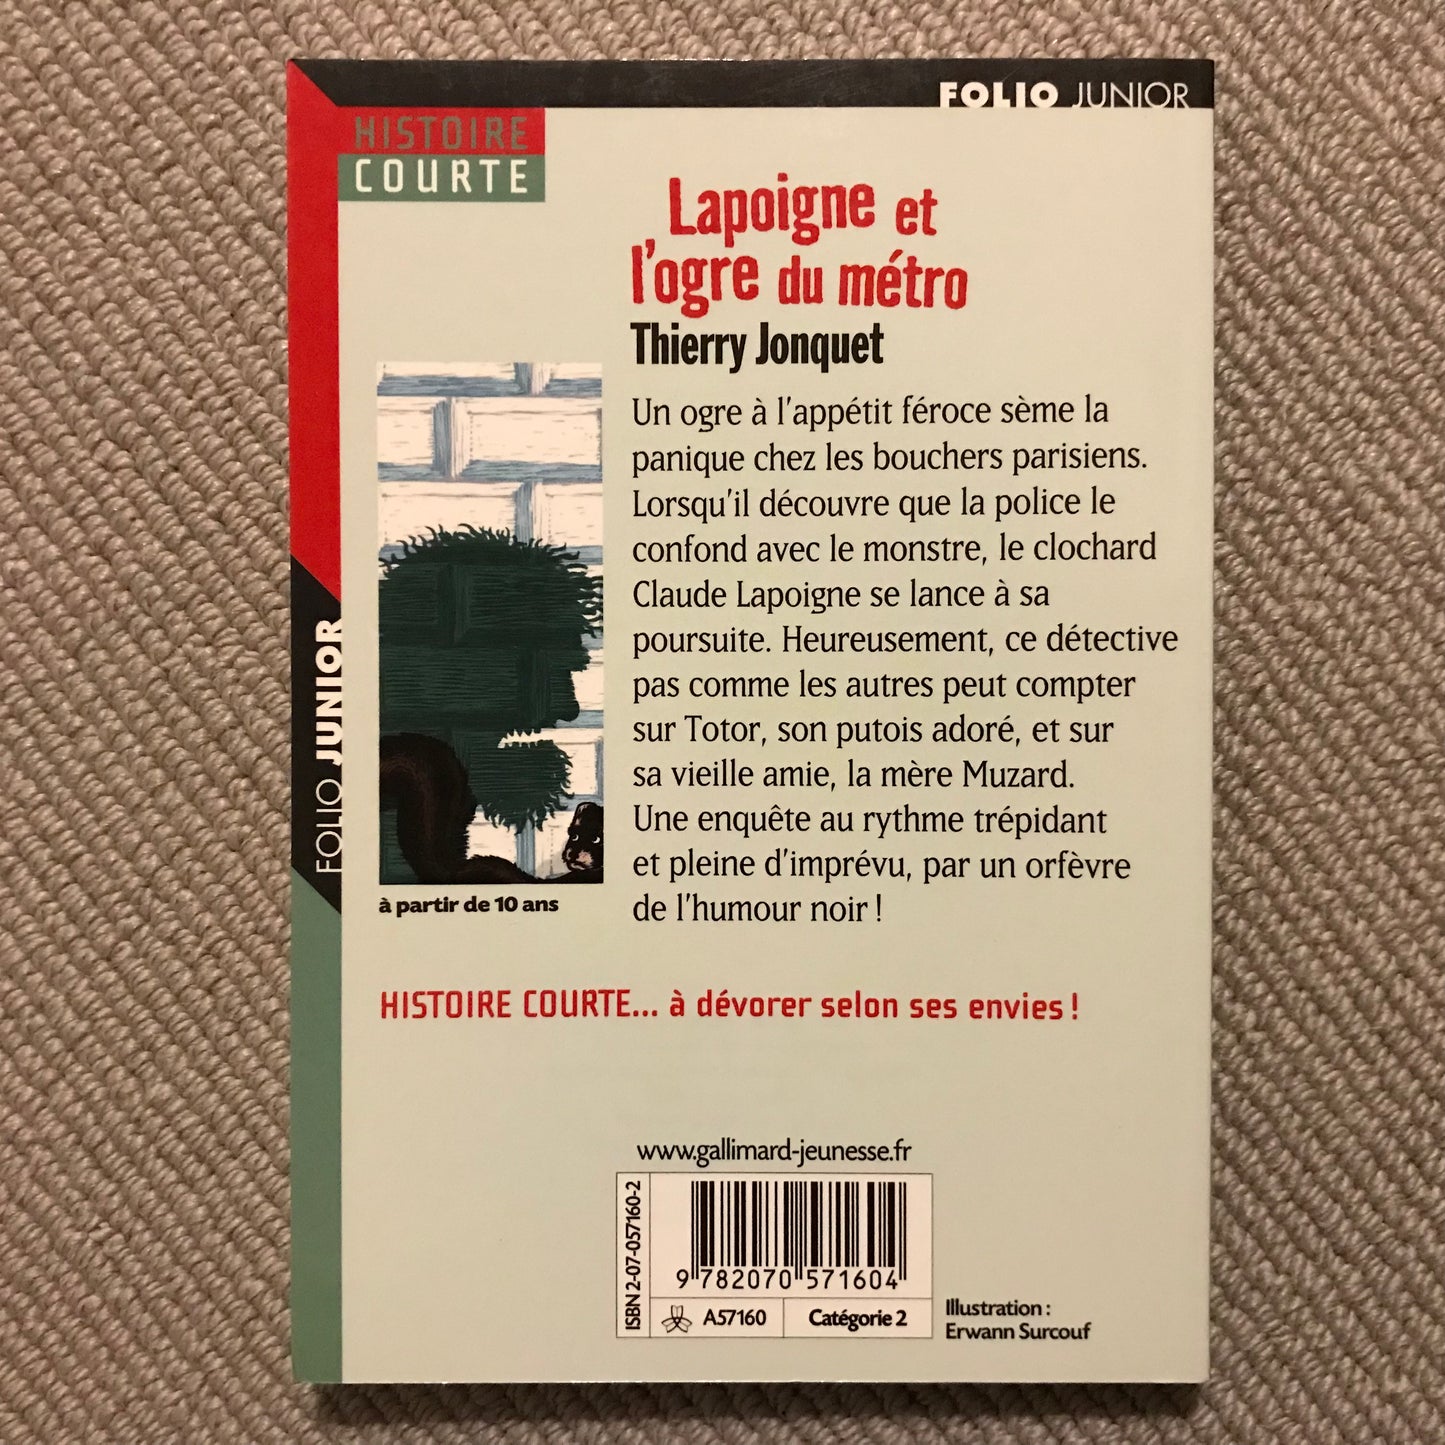 Jonquet, Thierry - Lapoigne et l’ogre du métro